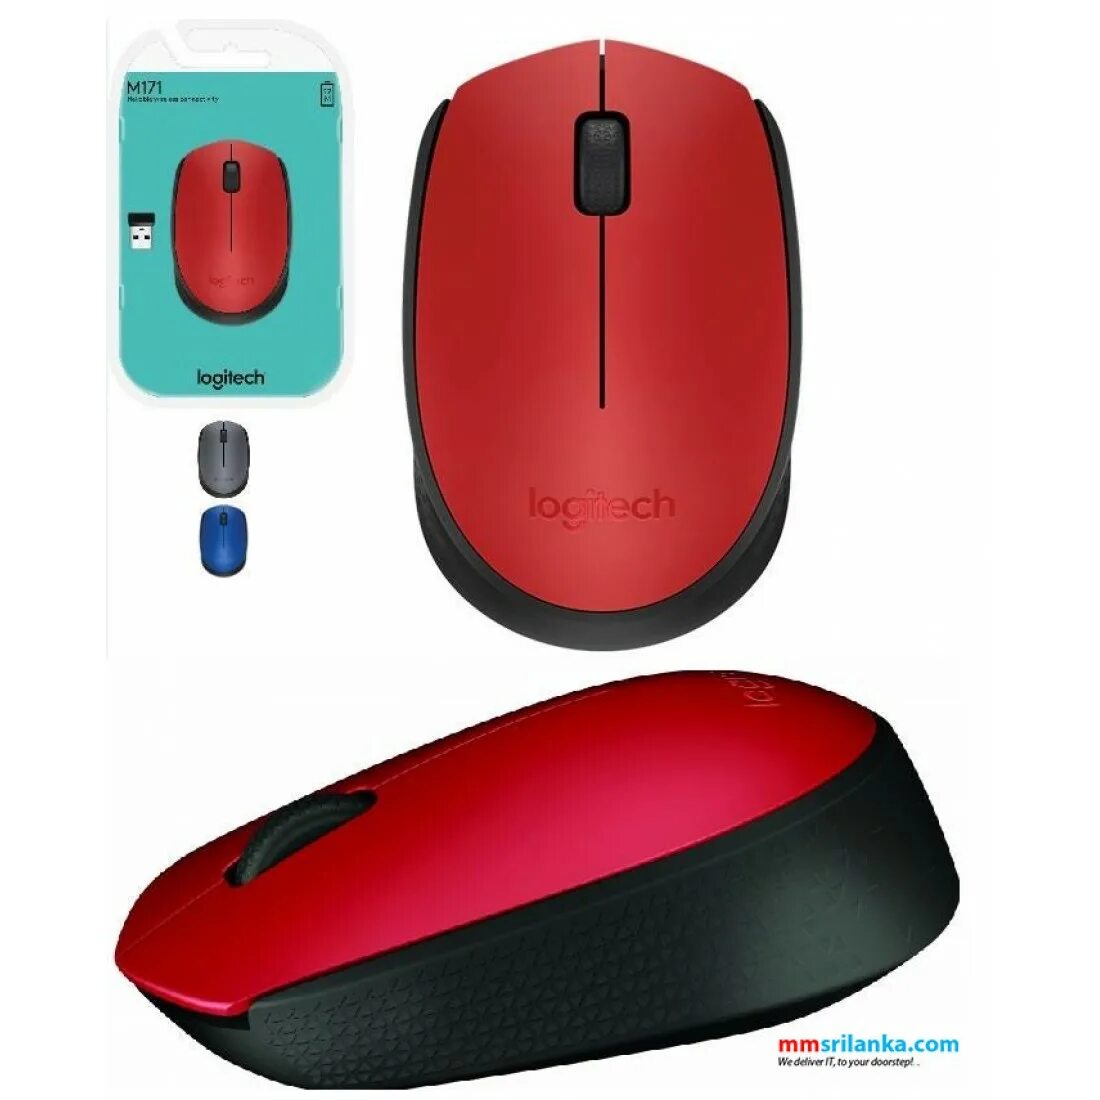 Мышь беспроводная Logitech m171. Logitech m171 Wireless Mouse Red. Logitech m171 Red Black. Мышь Logitech Wireless Mouse m171 Black. Беспроводная мышь красная